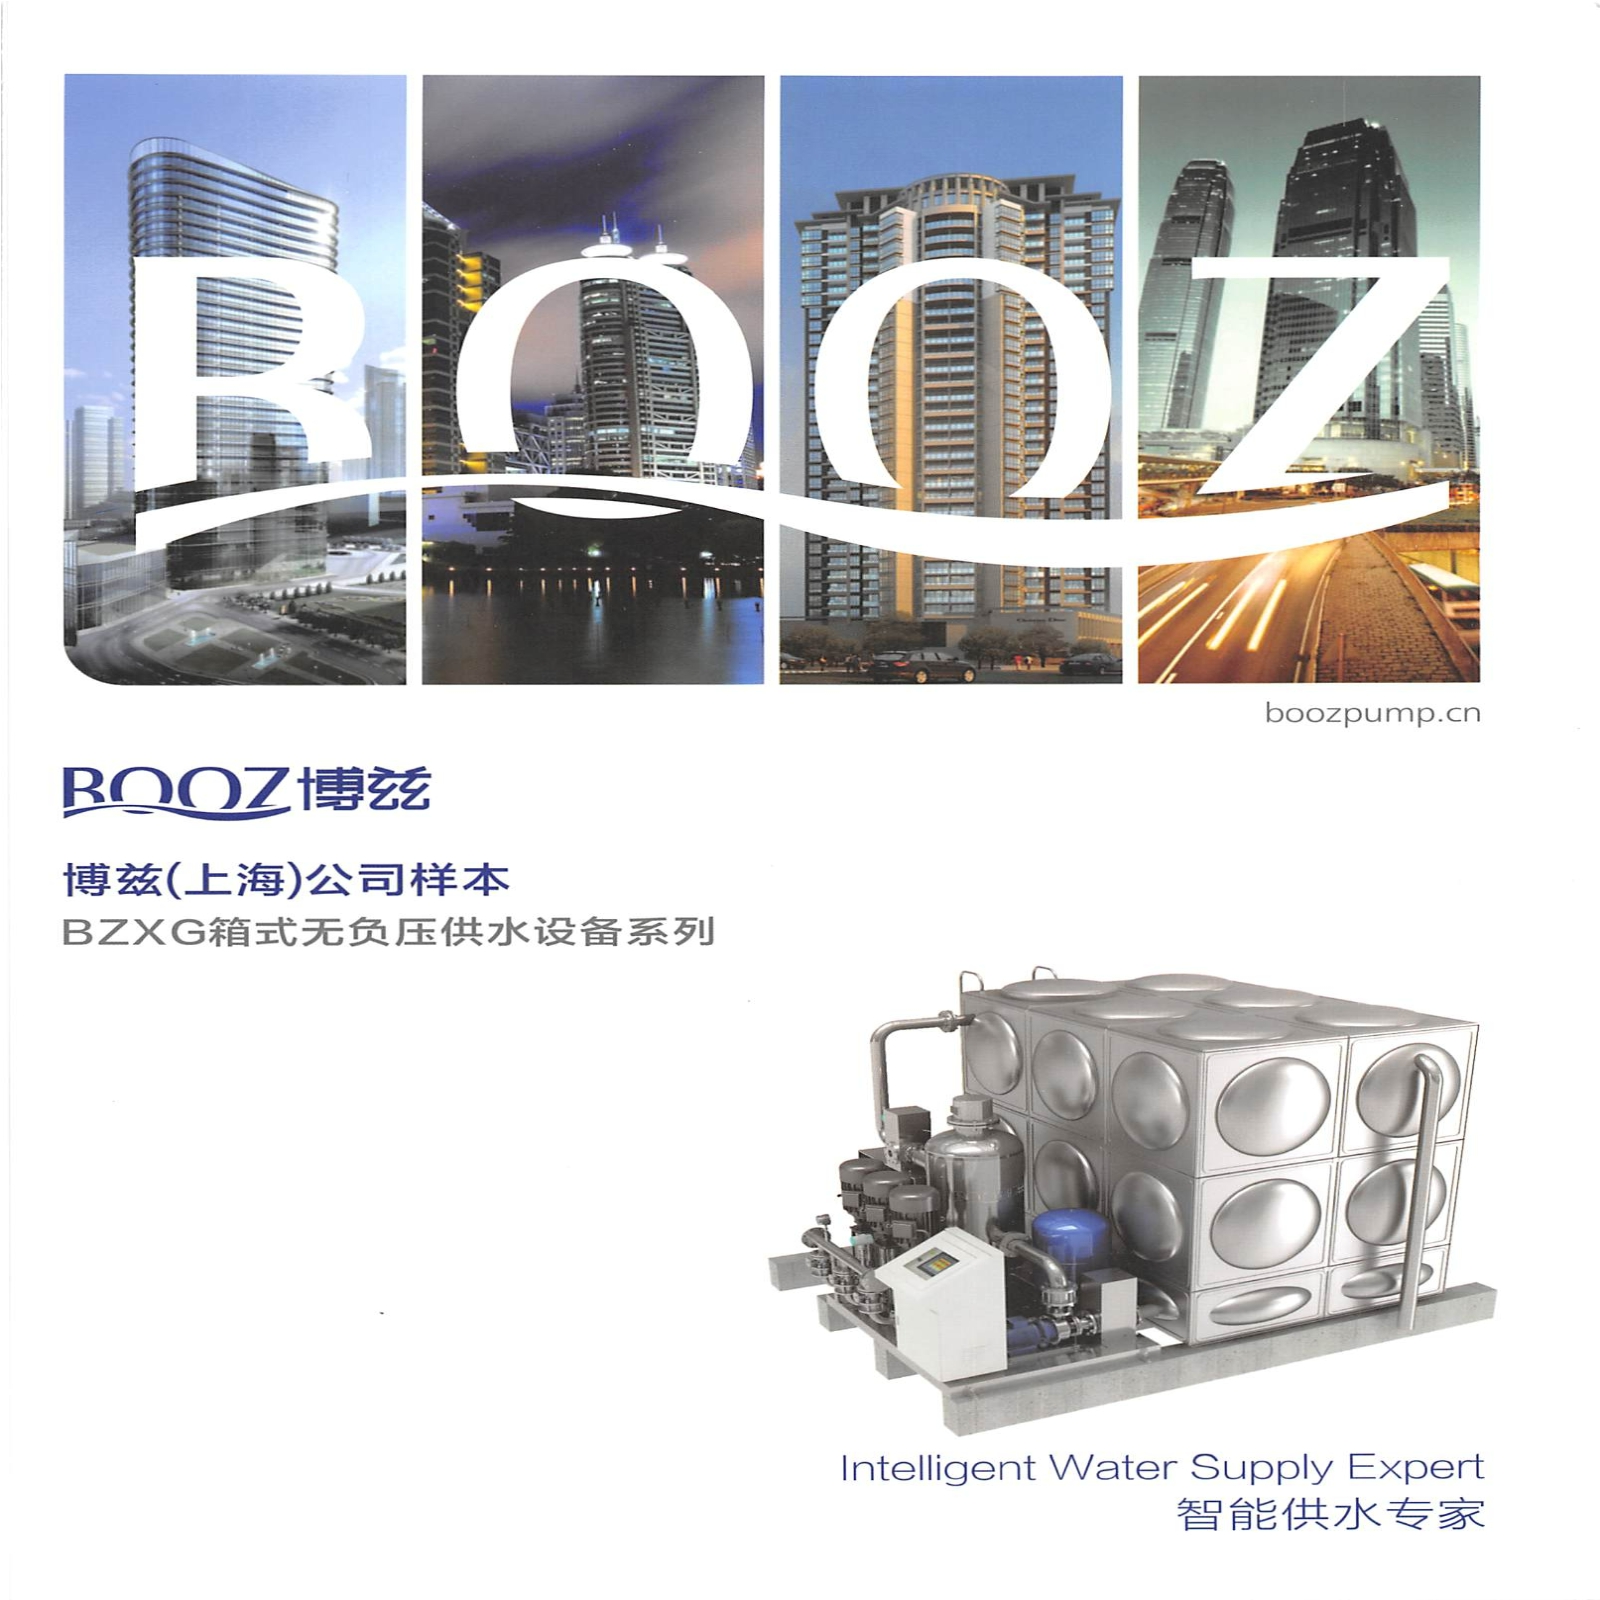 BZXG箱式无负压供水设备系列